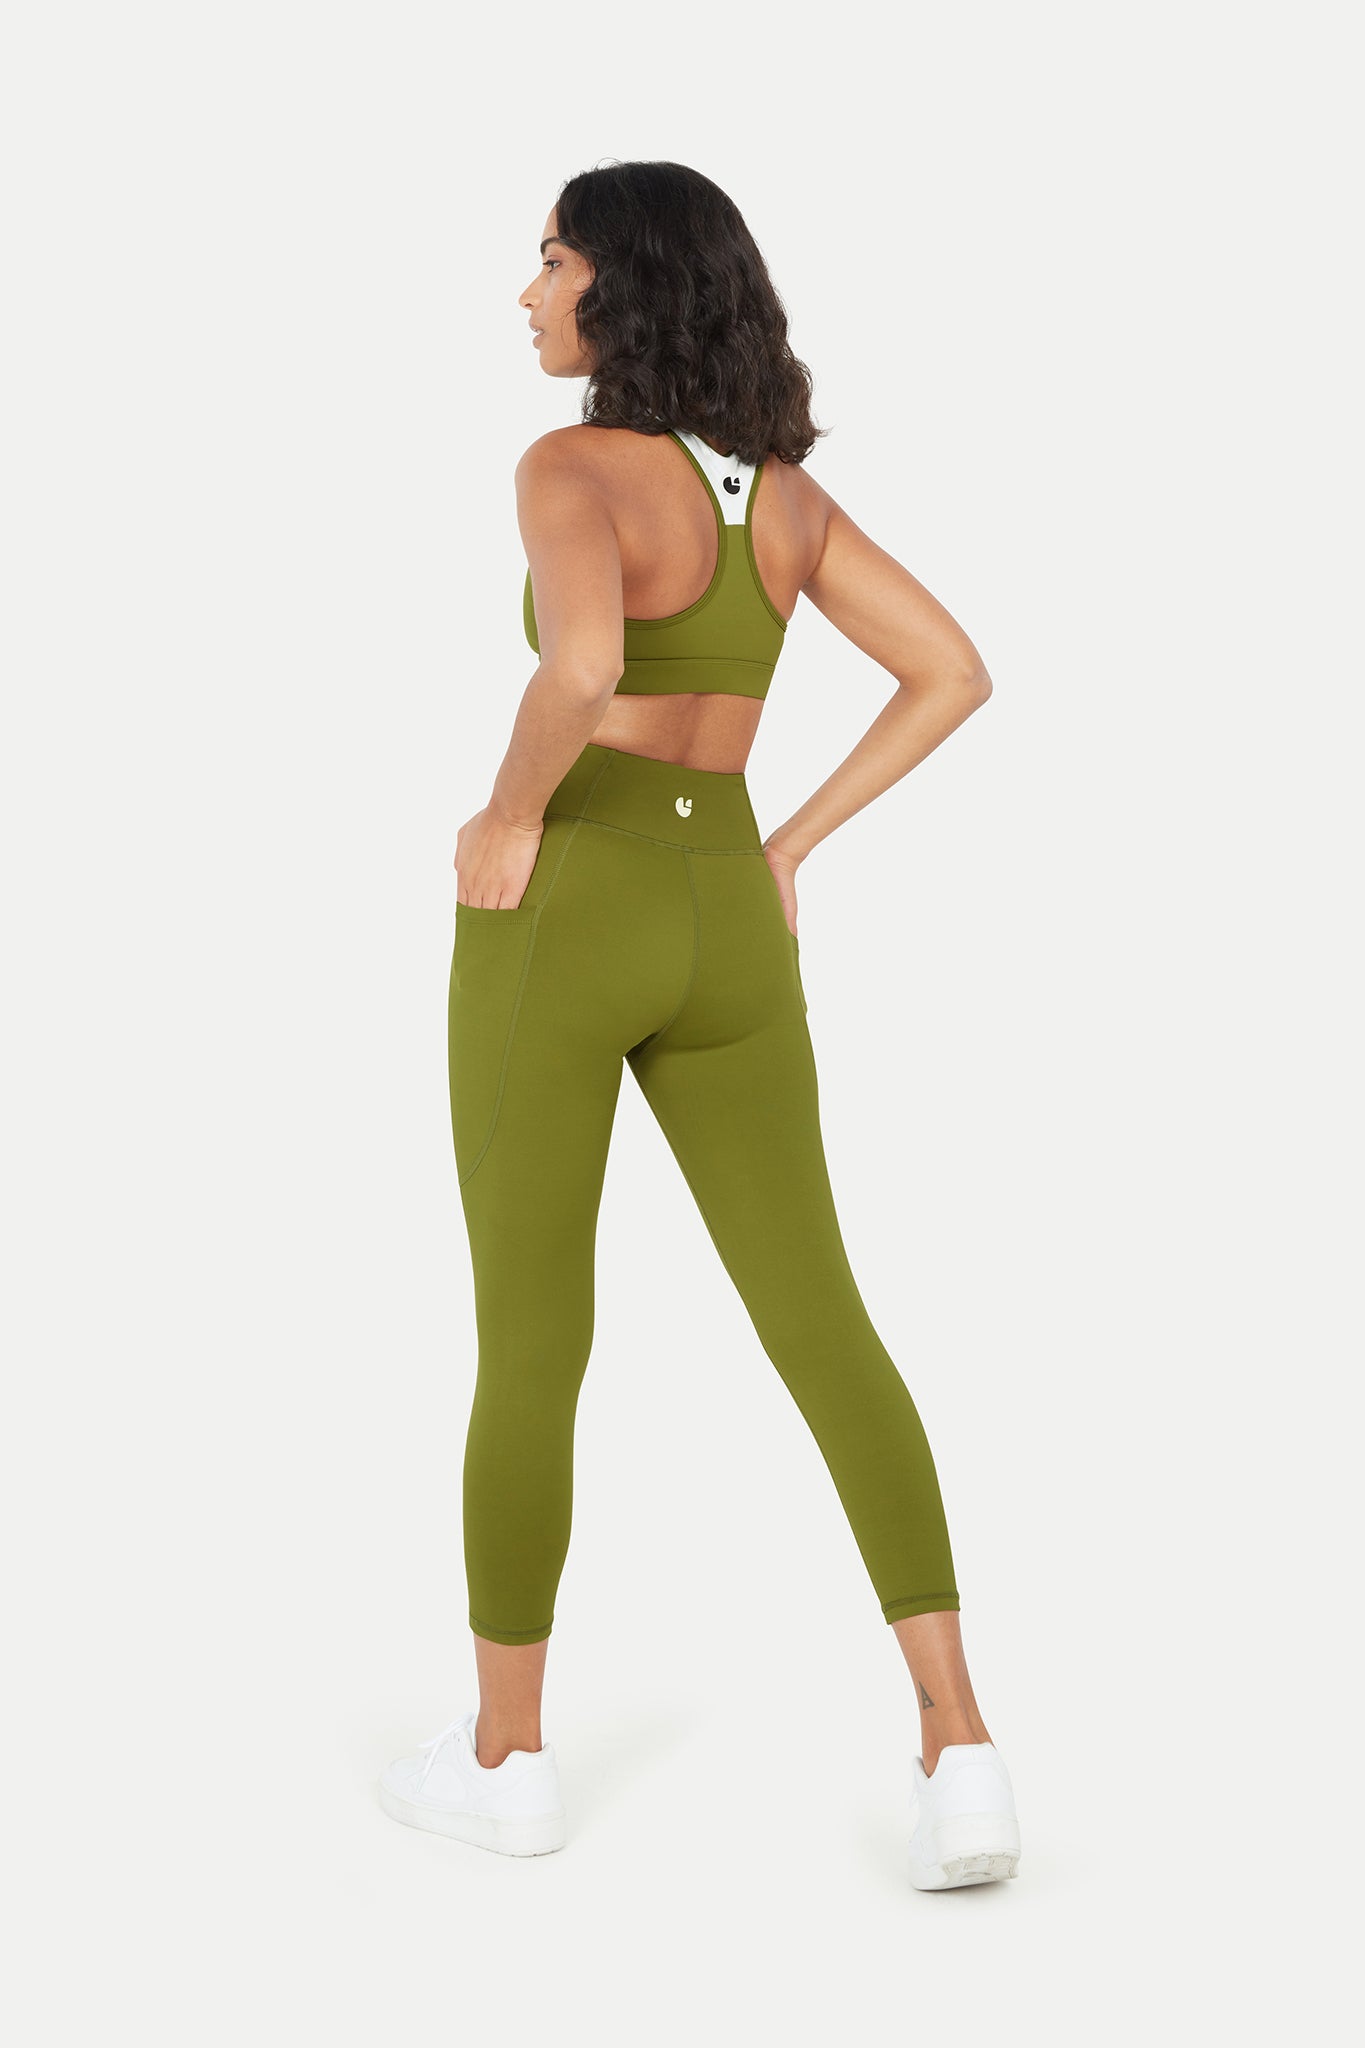 Sustainable plant based leggings with pocket in the back. – NATASHA TONIC